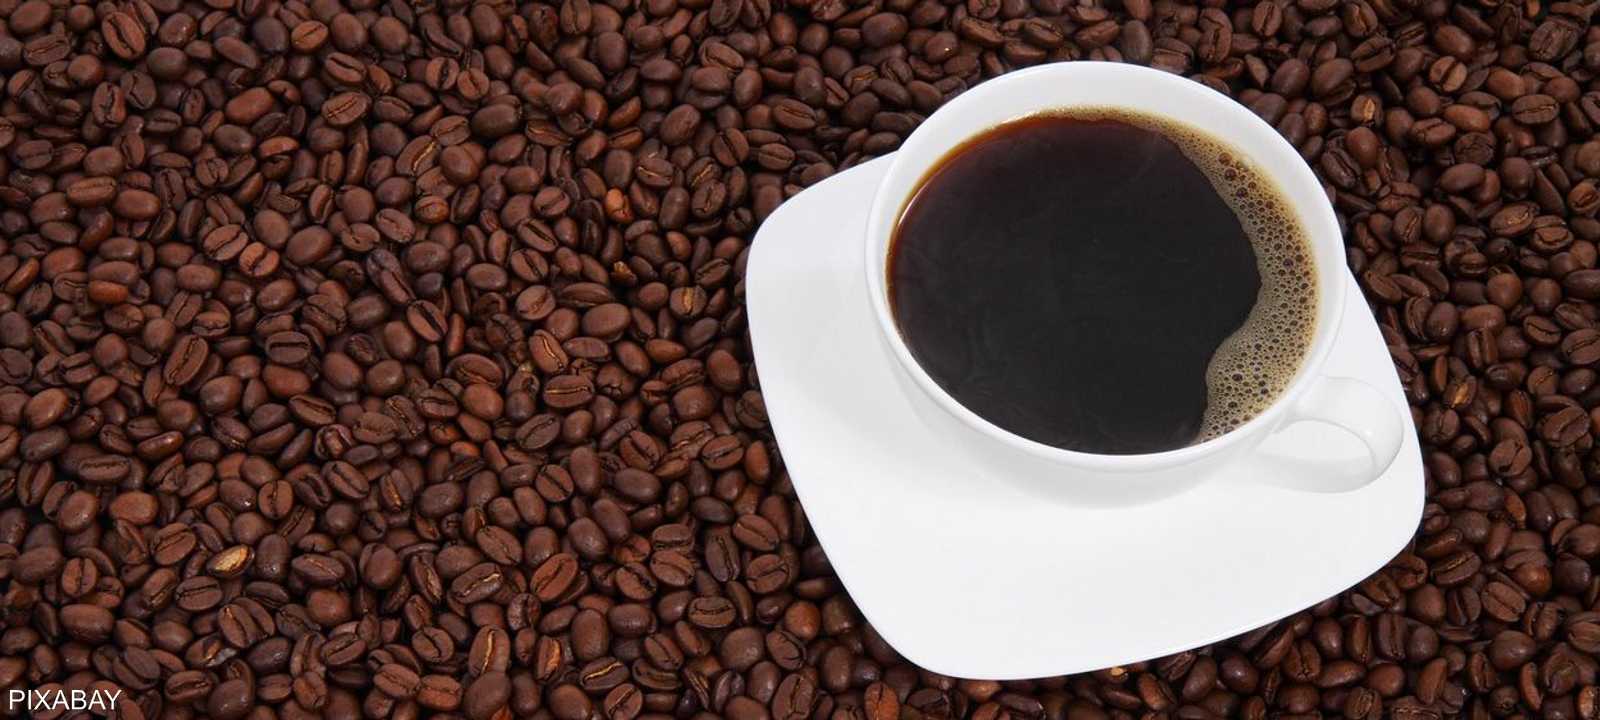 أسعار القهوة قد ترتفع في الفترة المقبلة